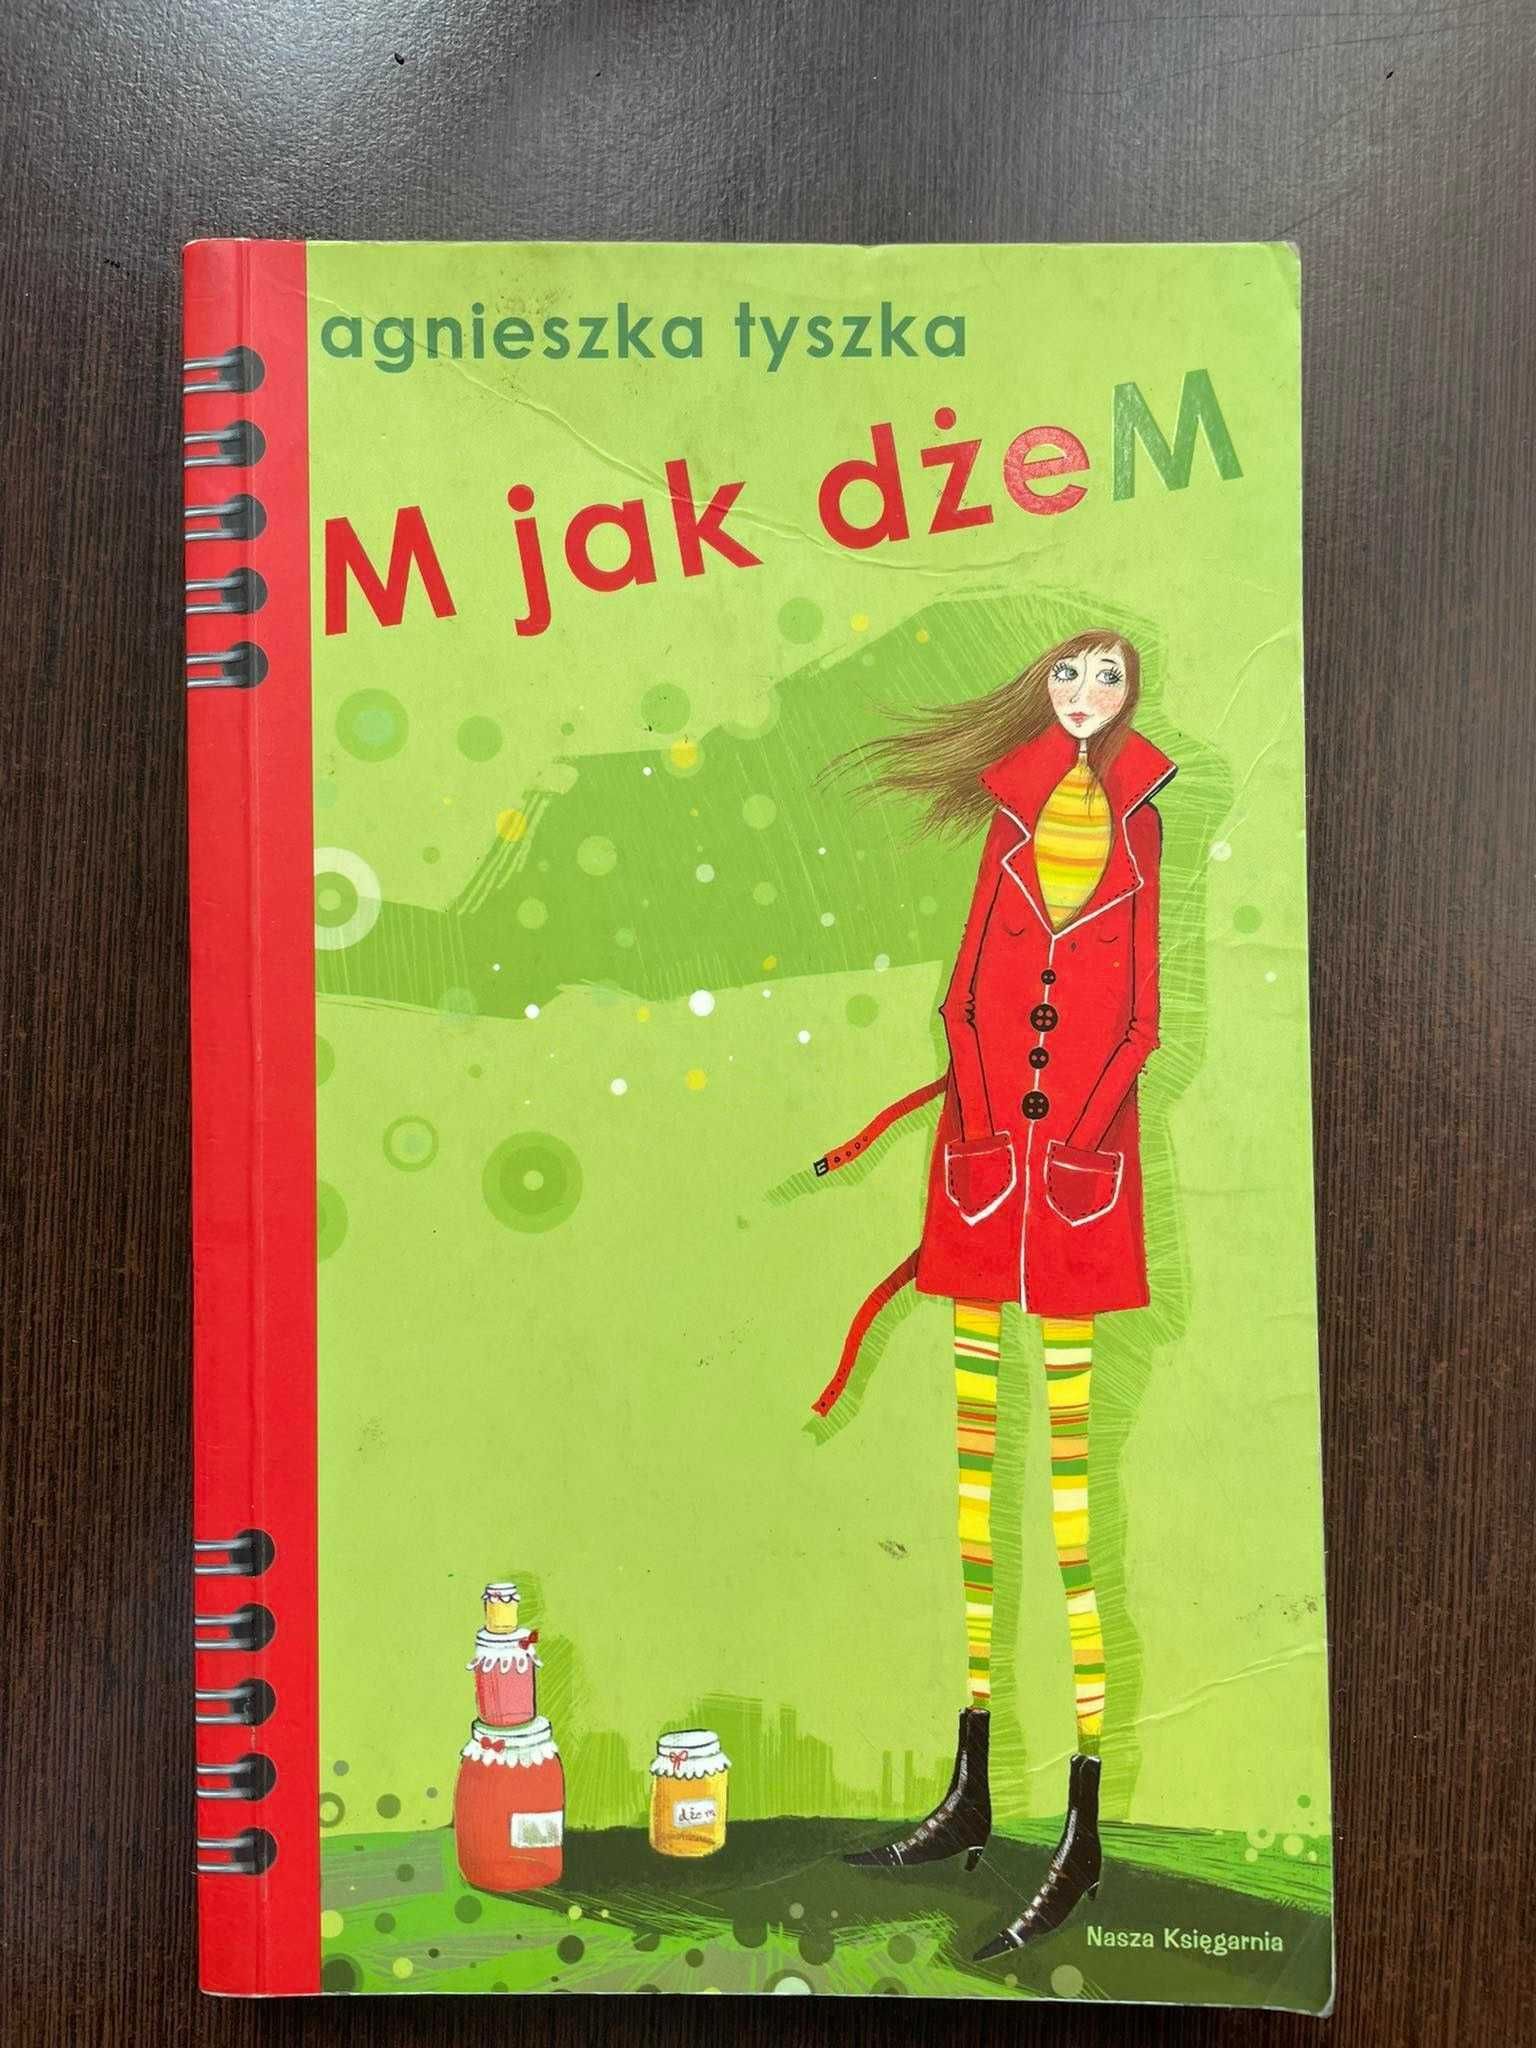 M jak dżeM - Agnieszka Tyszka